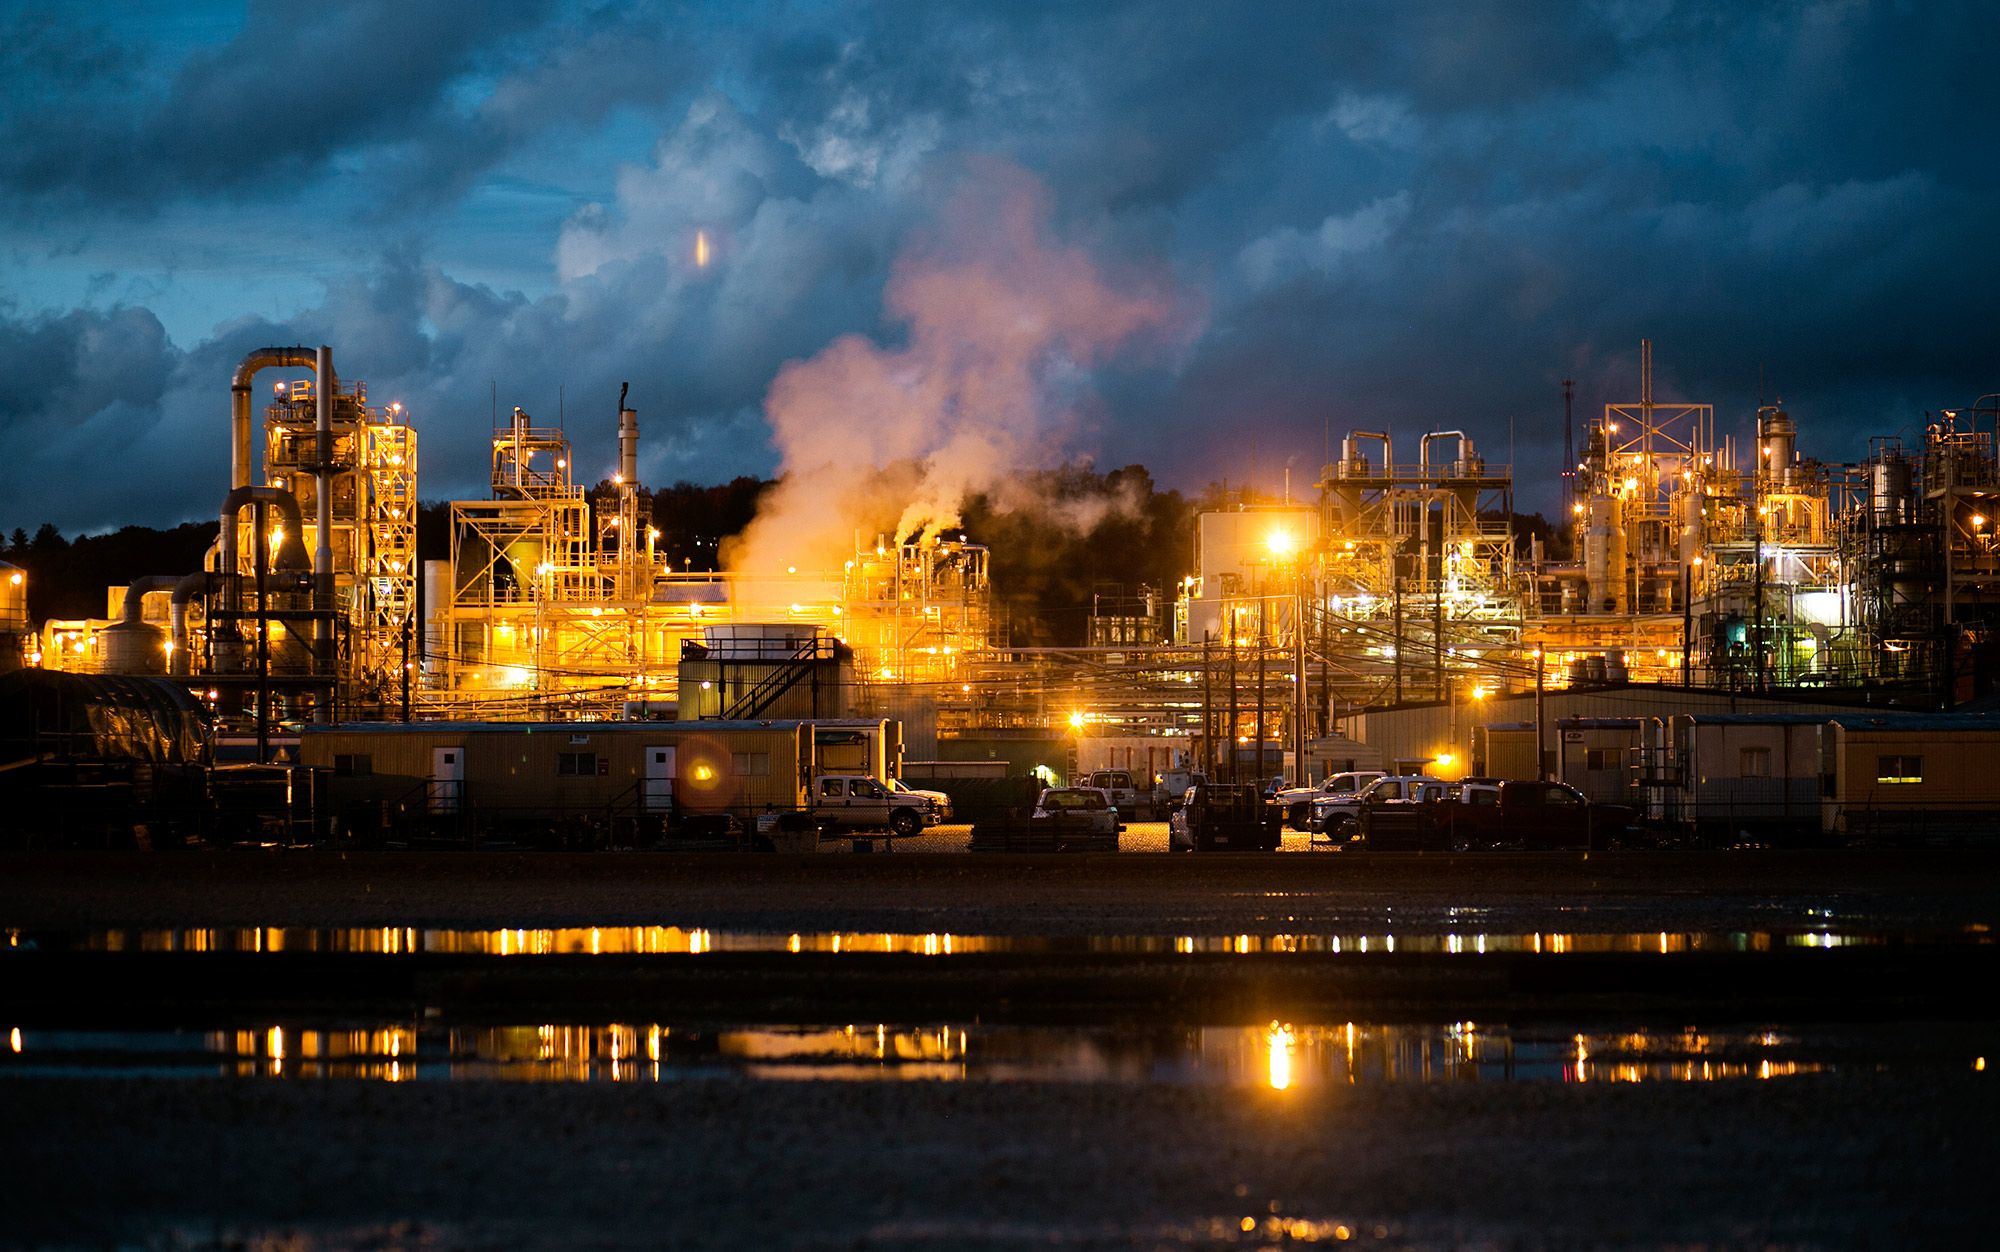 Resultado de imagem para âGround zero for PFAS pollutionâ: the DuPont Washington Works plant in Parkersburg, West Virginia. Photographed on 28 October 2015. Photo by Maddie McGarvey/The Washington Post via Getty Images